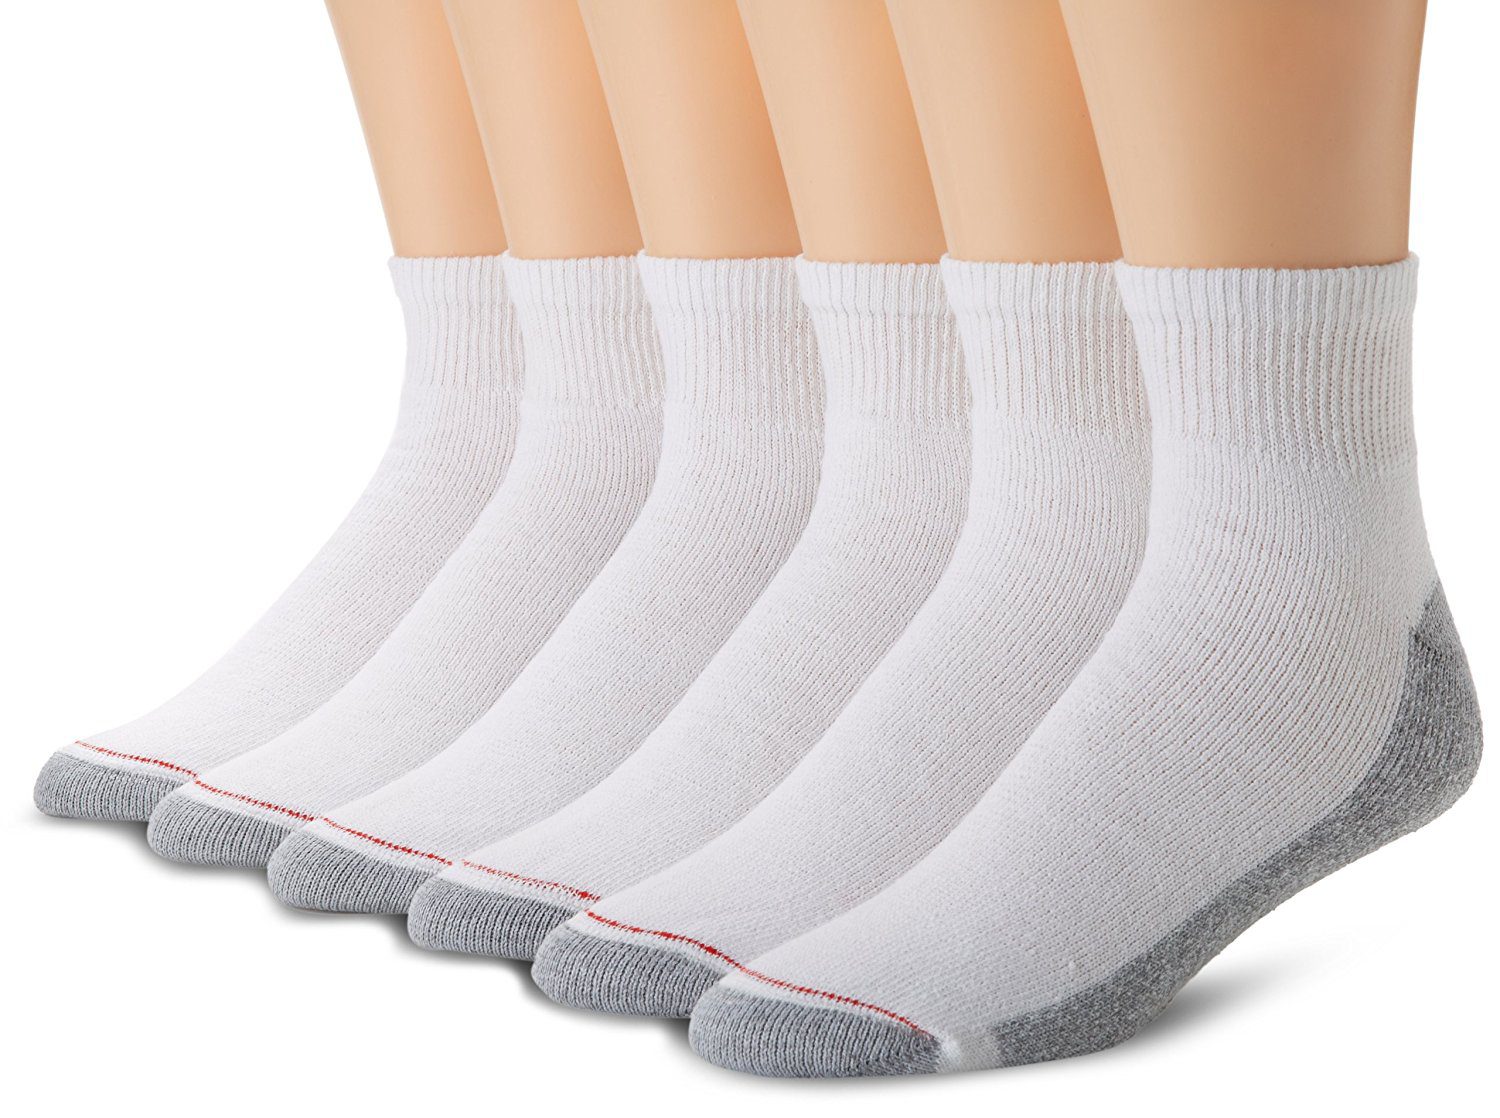 Hanes Mens Cushion Ankle Socks 6-Pack